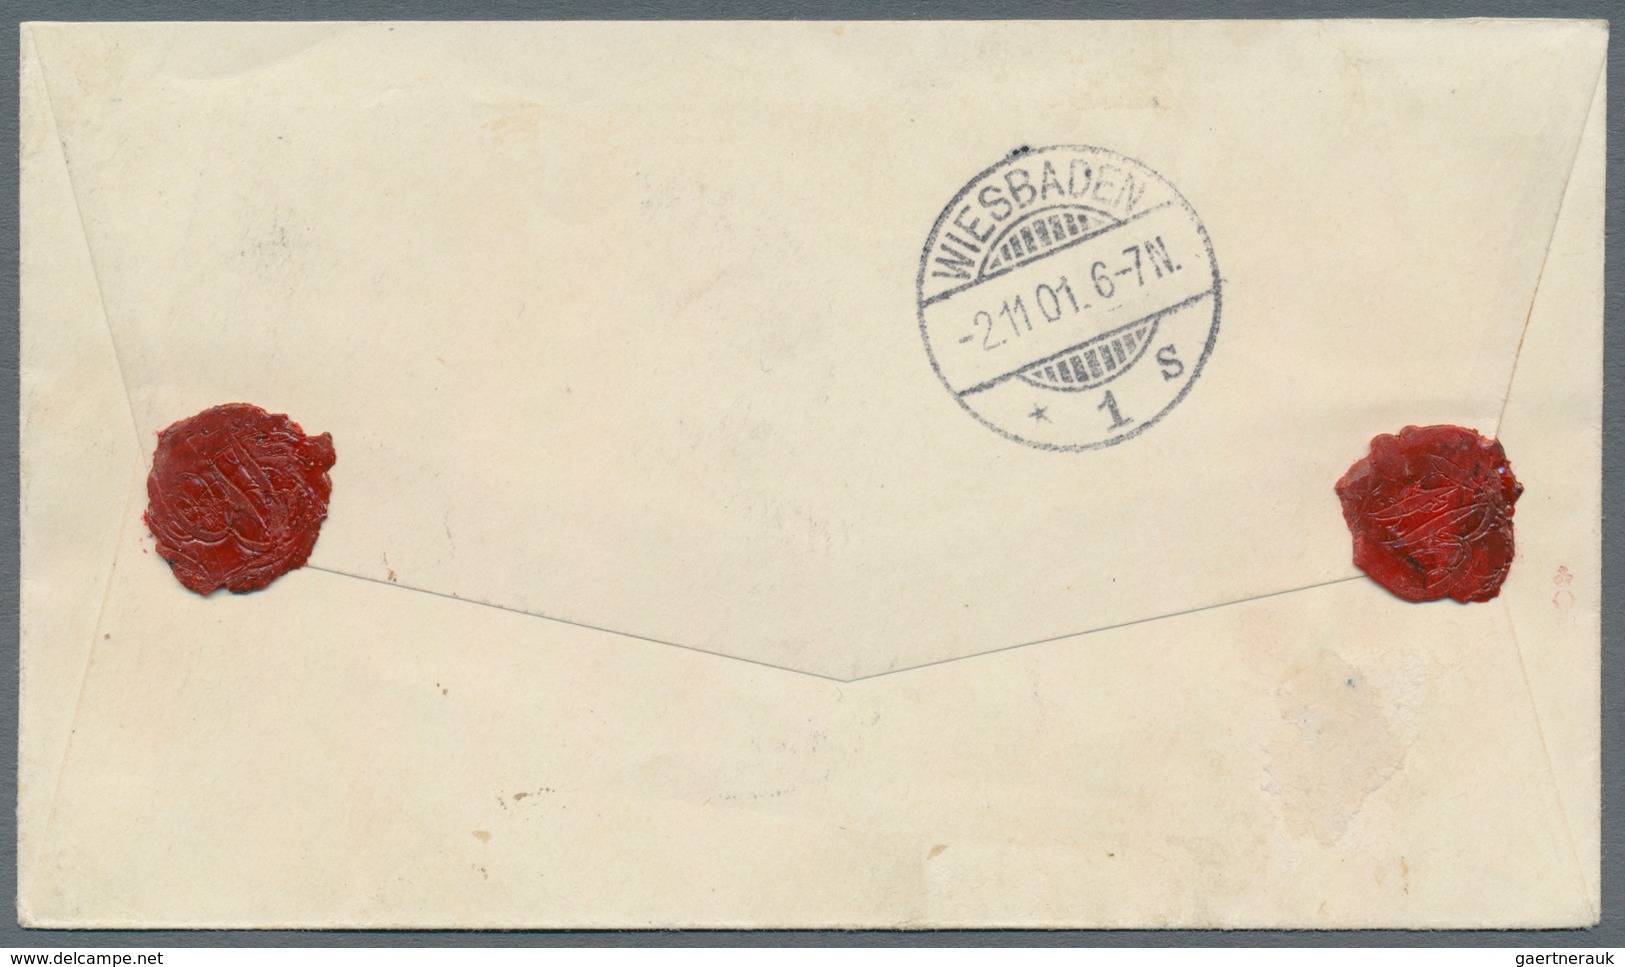 Deutsche Kolonien - Karolinen: 1899, 50 Pfg. Mit Diagonalem Aufdruck Auf überfrankiertem R-Brief Aus - Carolines